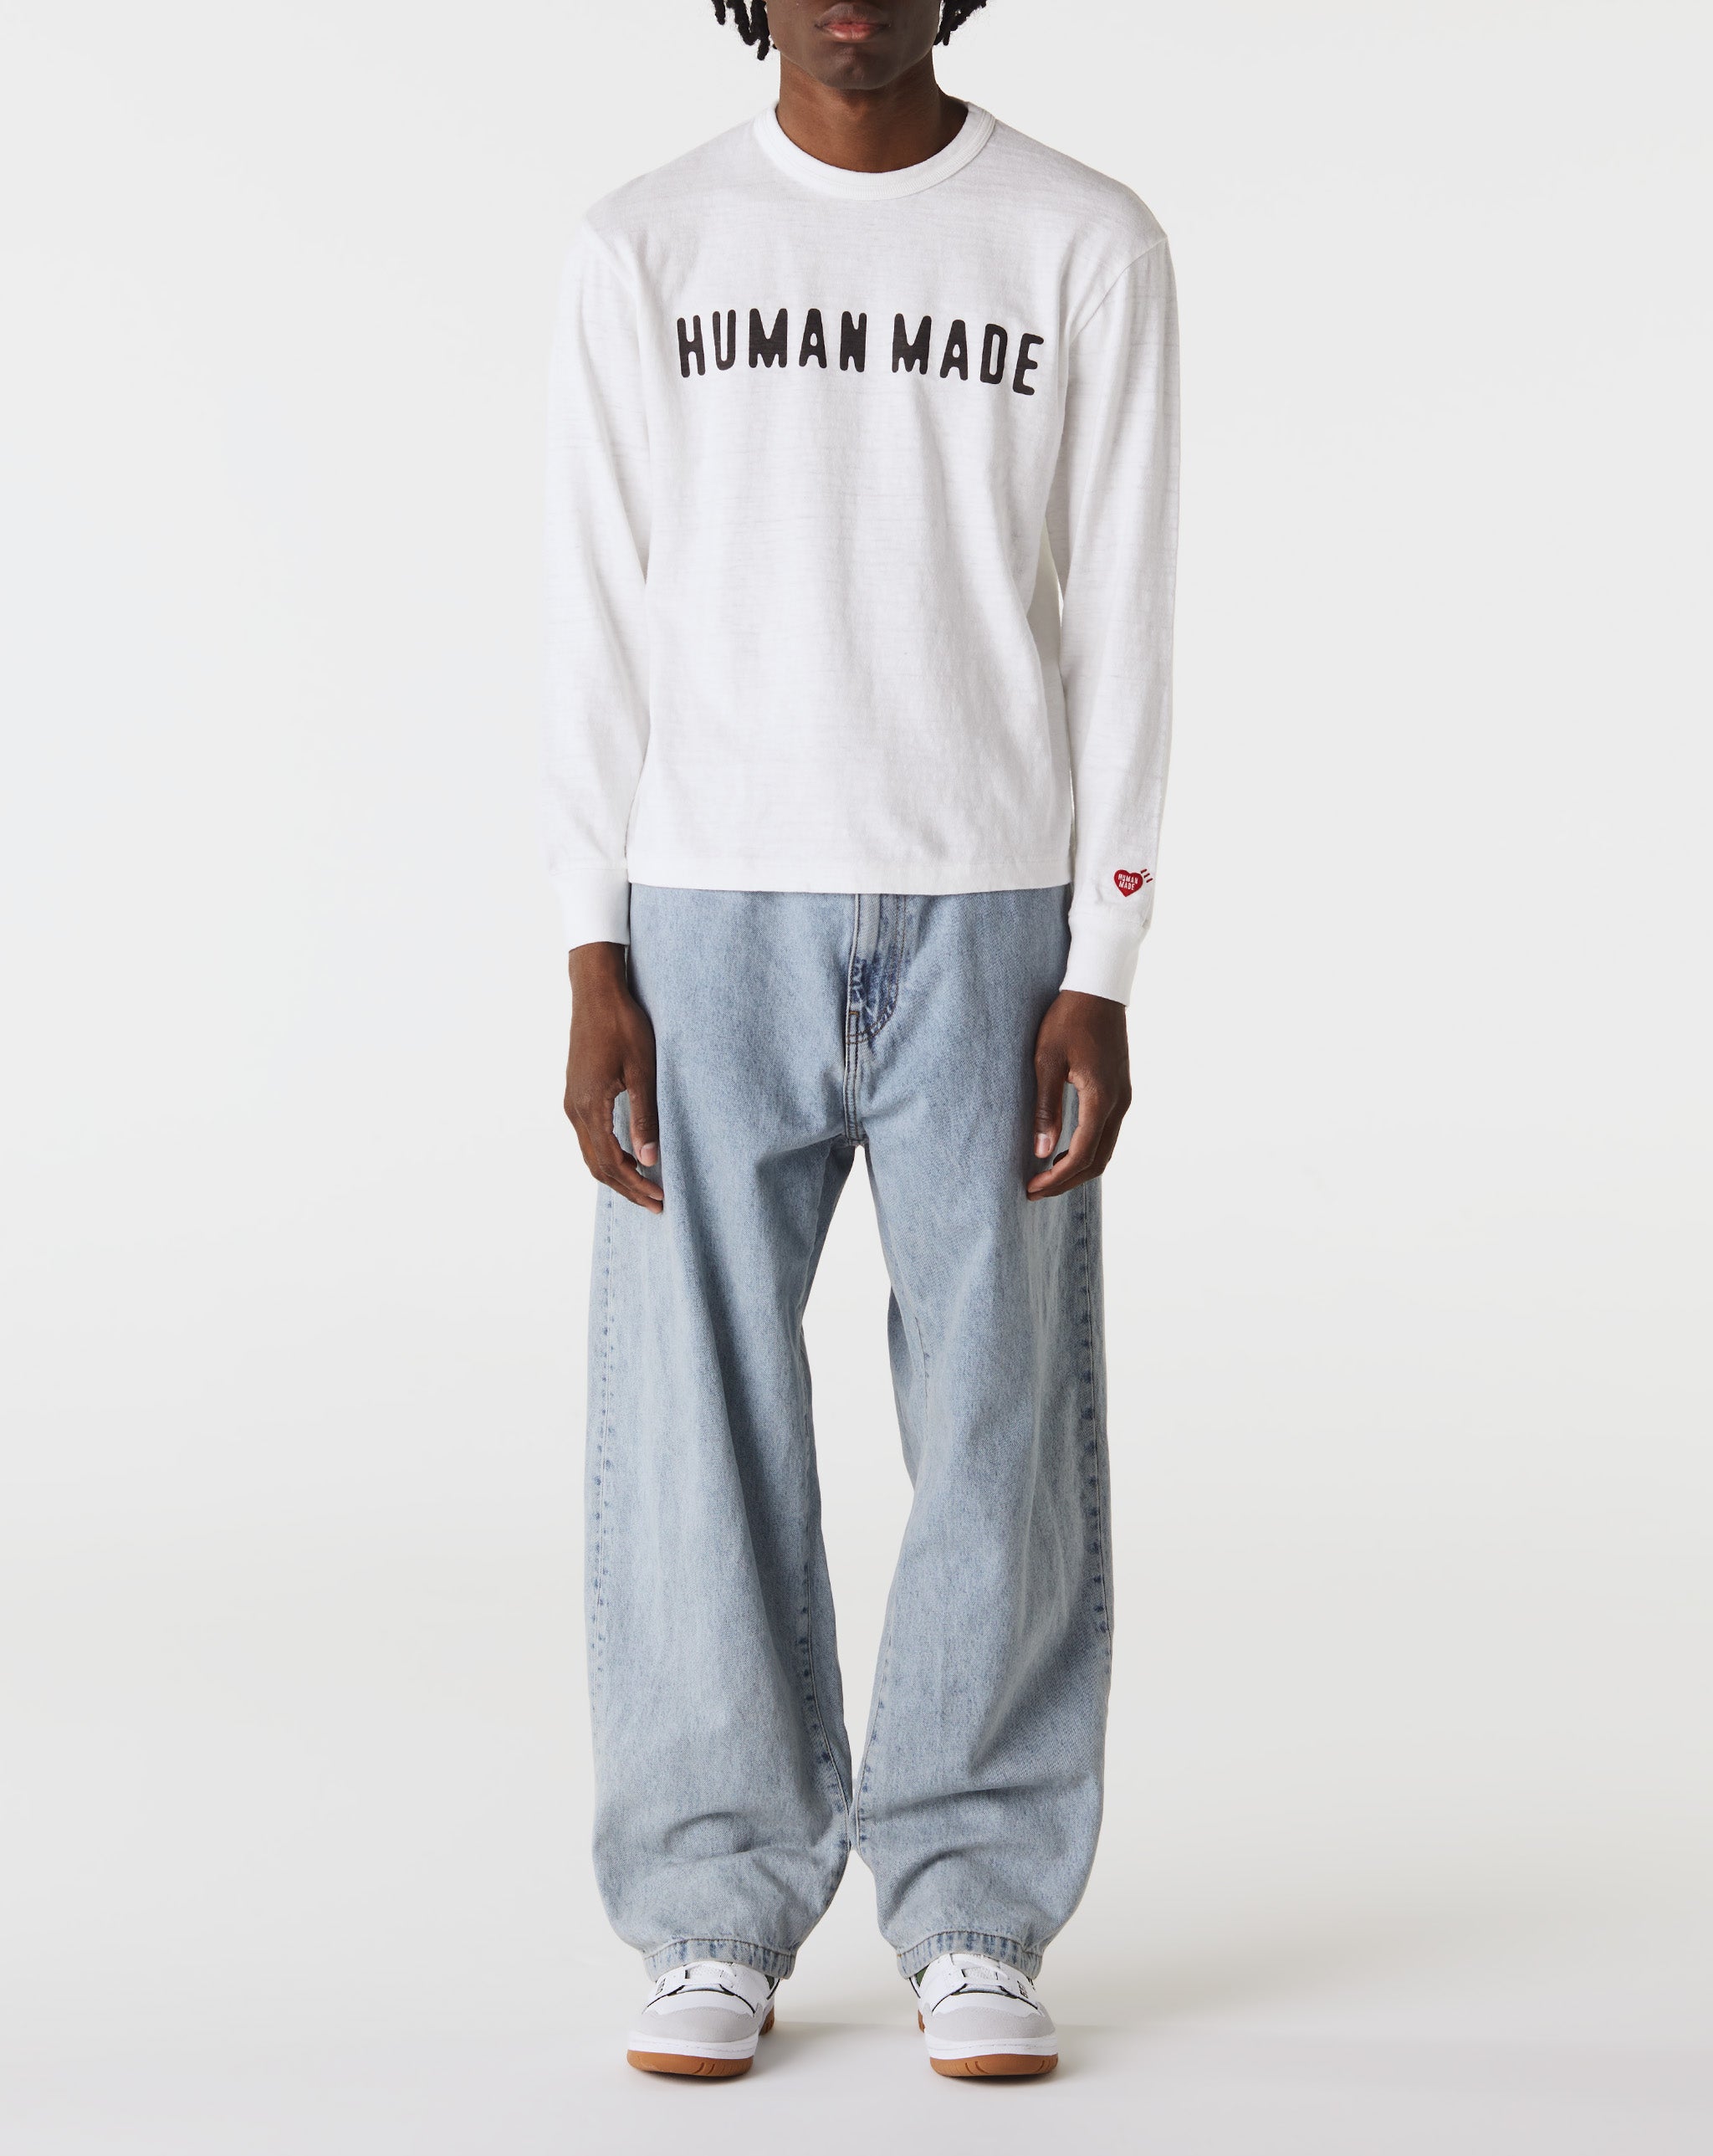 Human Made Graphic L/S T-Shirt  - Cheap Urlfreeze Jordan outlet